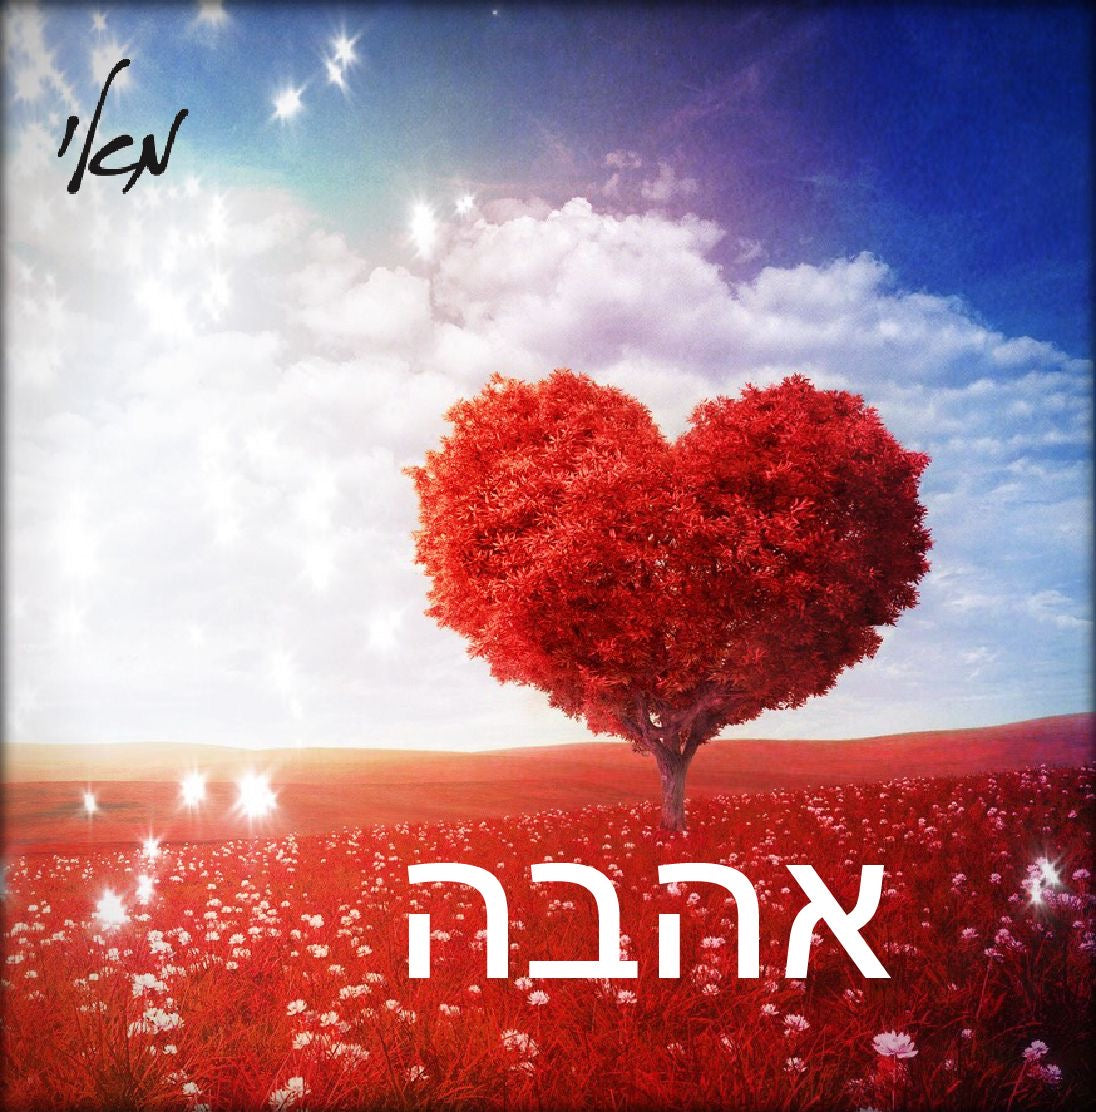 משיכת אהבה - חיזוק זוגיות - משיכה - -Kabbalah products- Attract love-attract soulmate